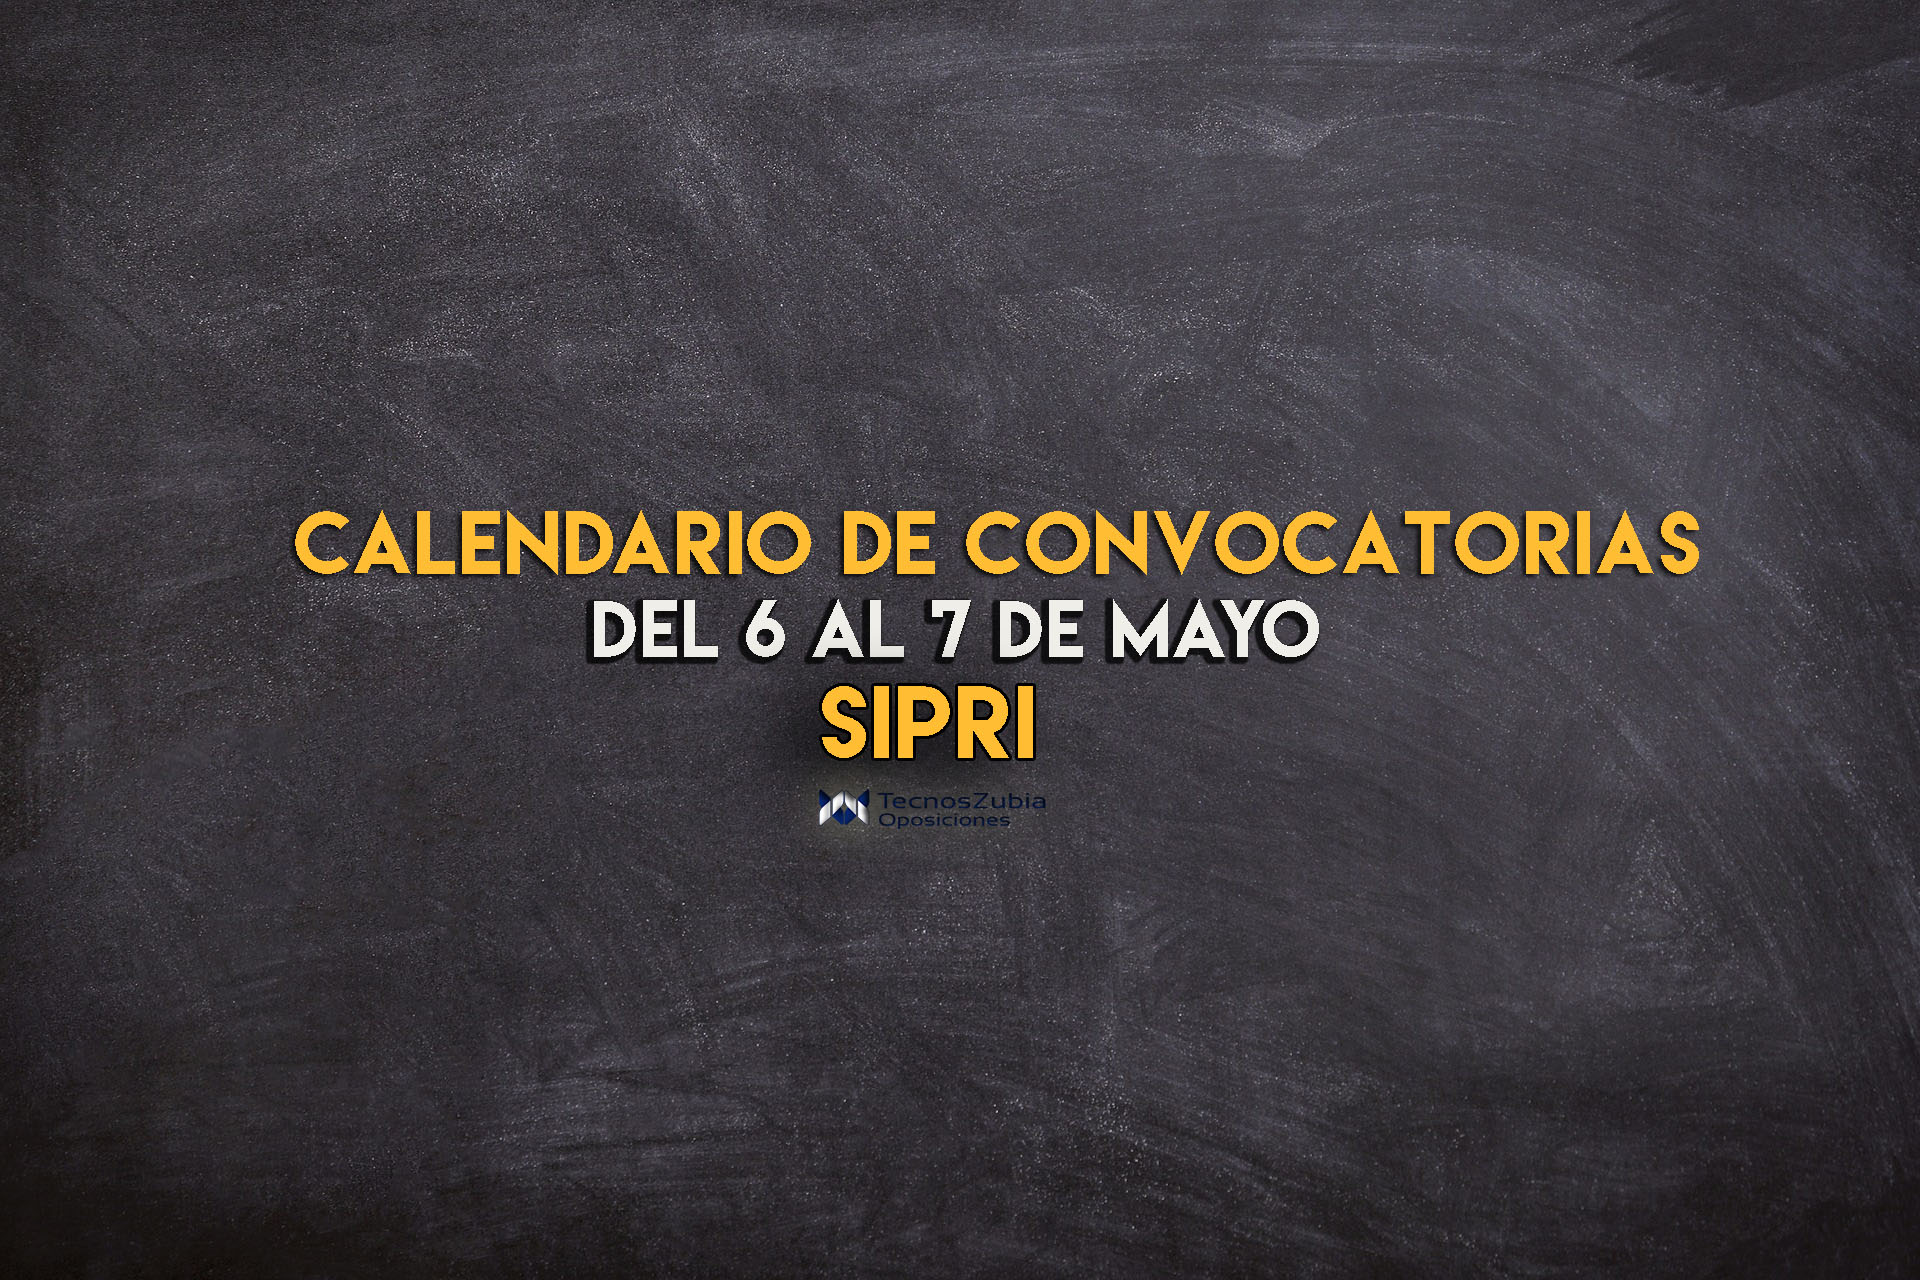 Calendario de convocatorias del 6 al 7 mayo SIPRI